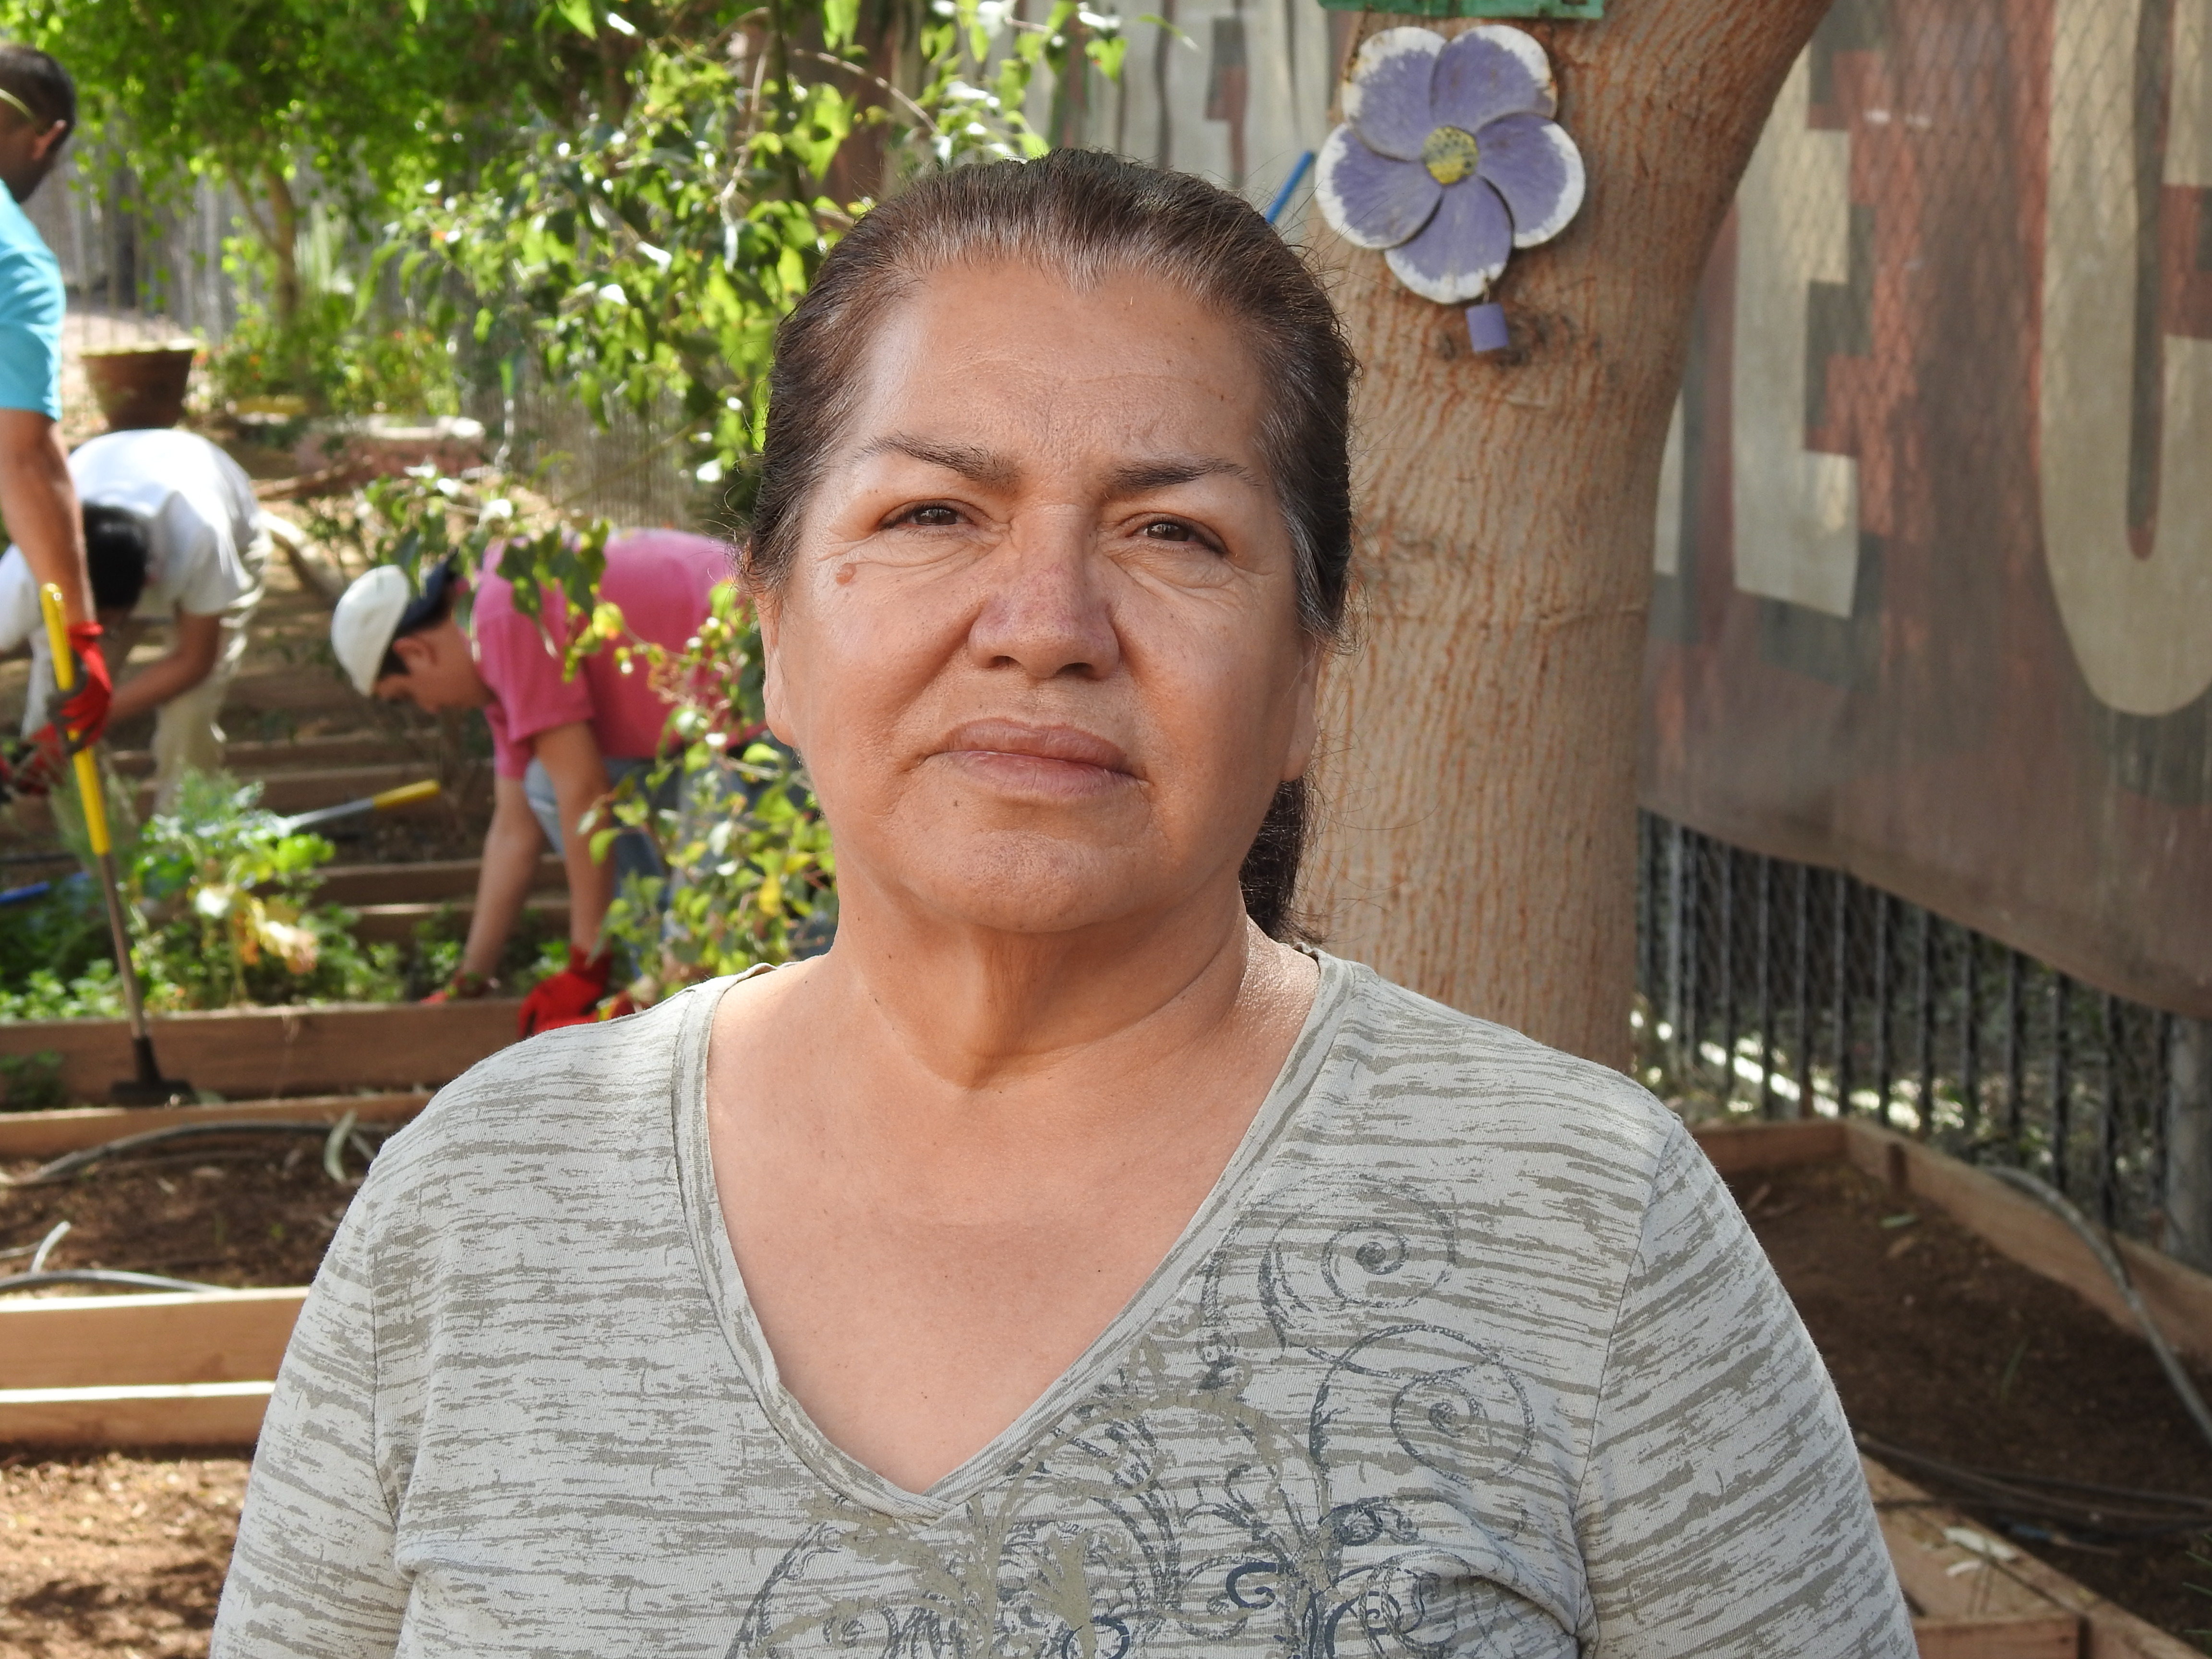 Irma Carrillo Nevarez, en el Centro Comunitario Golden Gate en Phoenix, Arizona. Ella dice que ha recibido poca ayuda de las autoridades para encontrar a sus hijos desaparecidos.